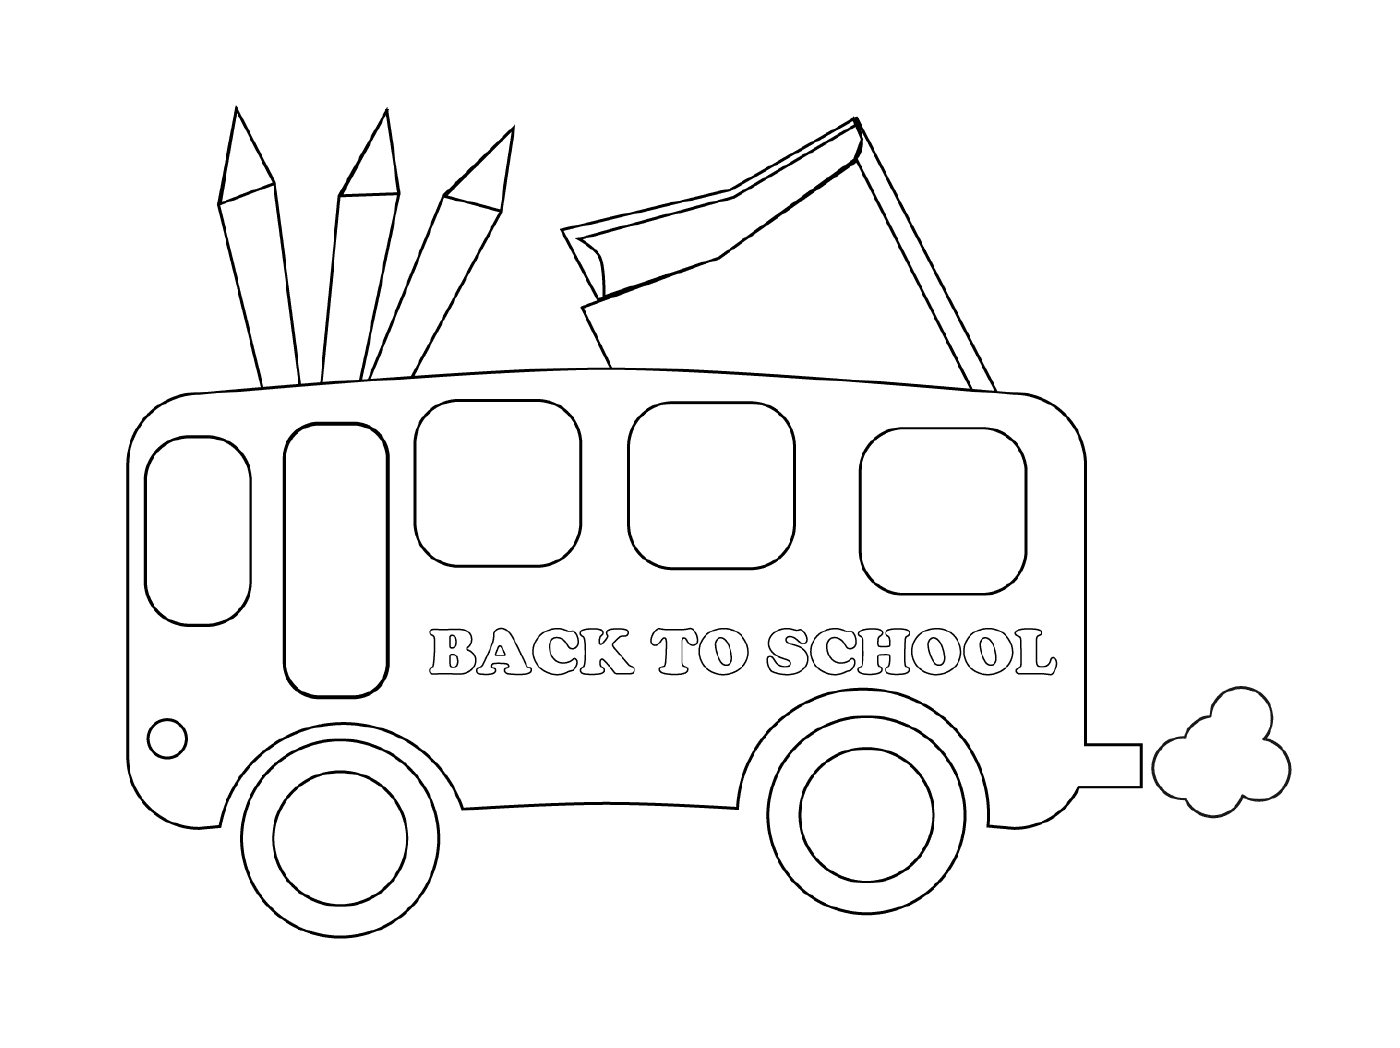  حافلات العودة إلى المدرسة 